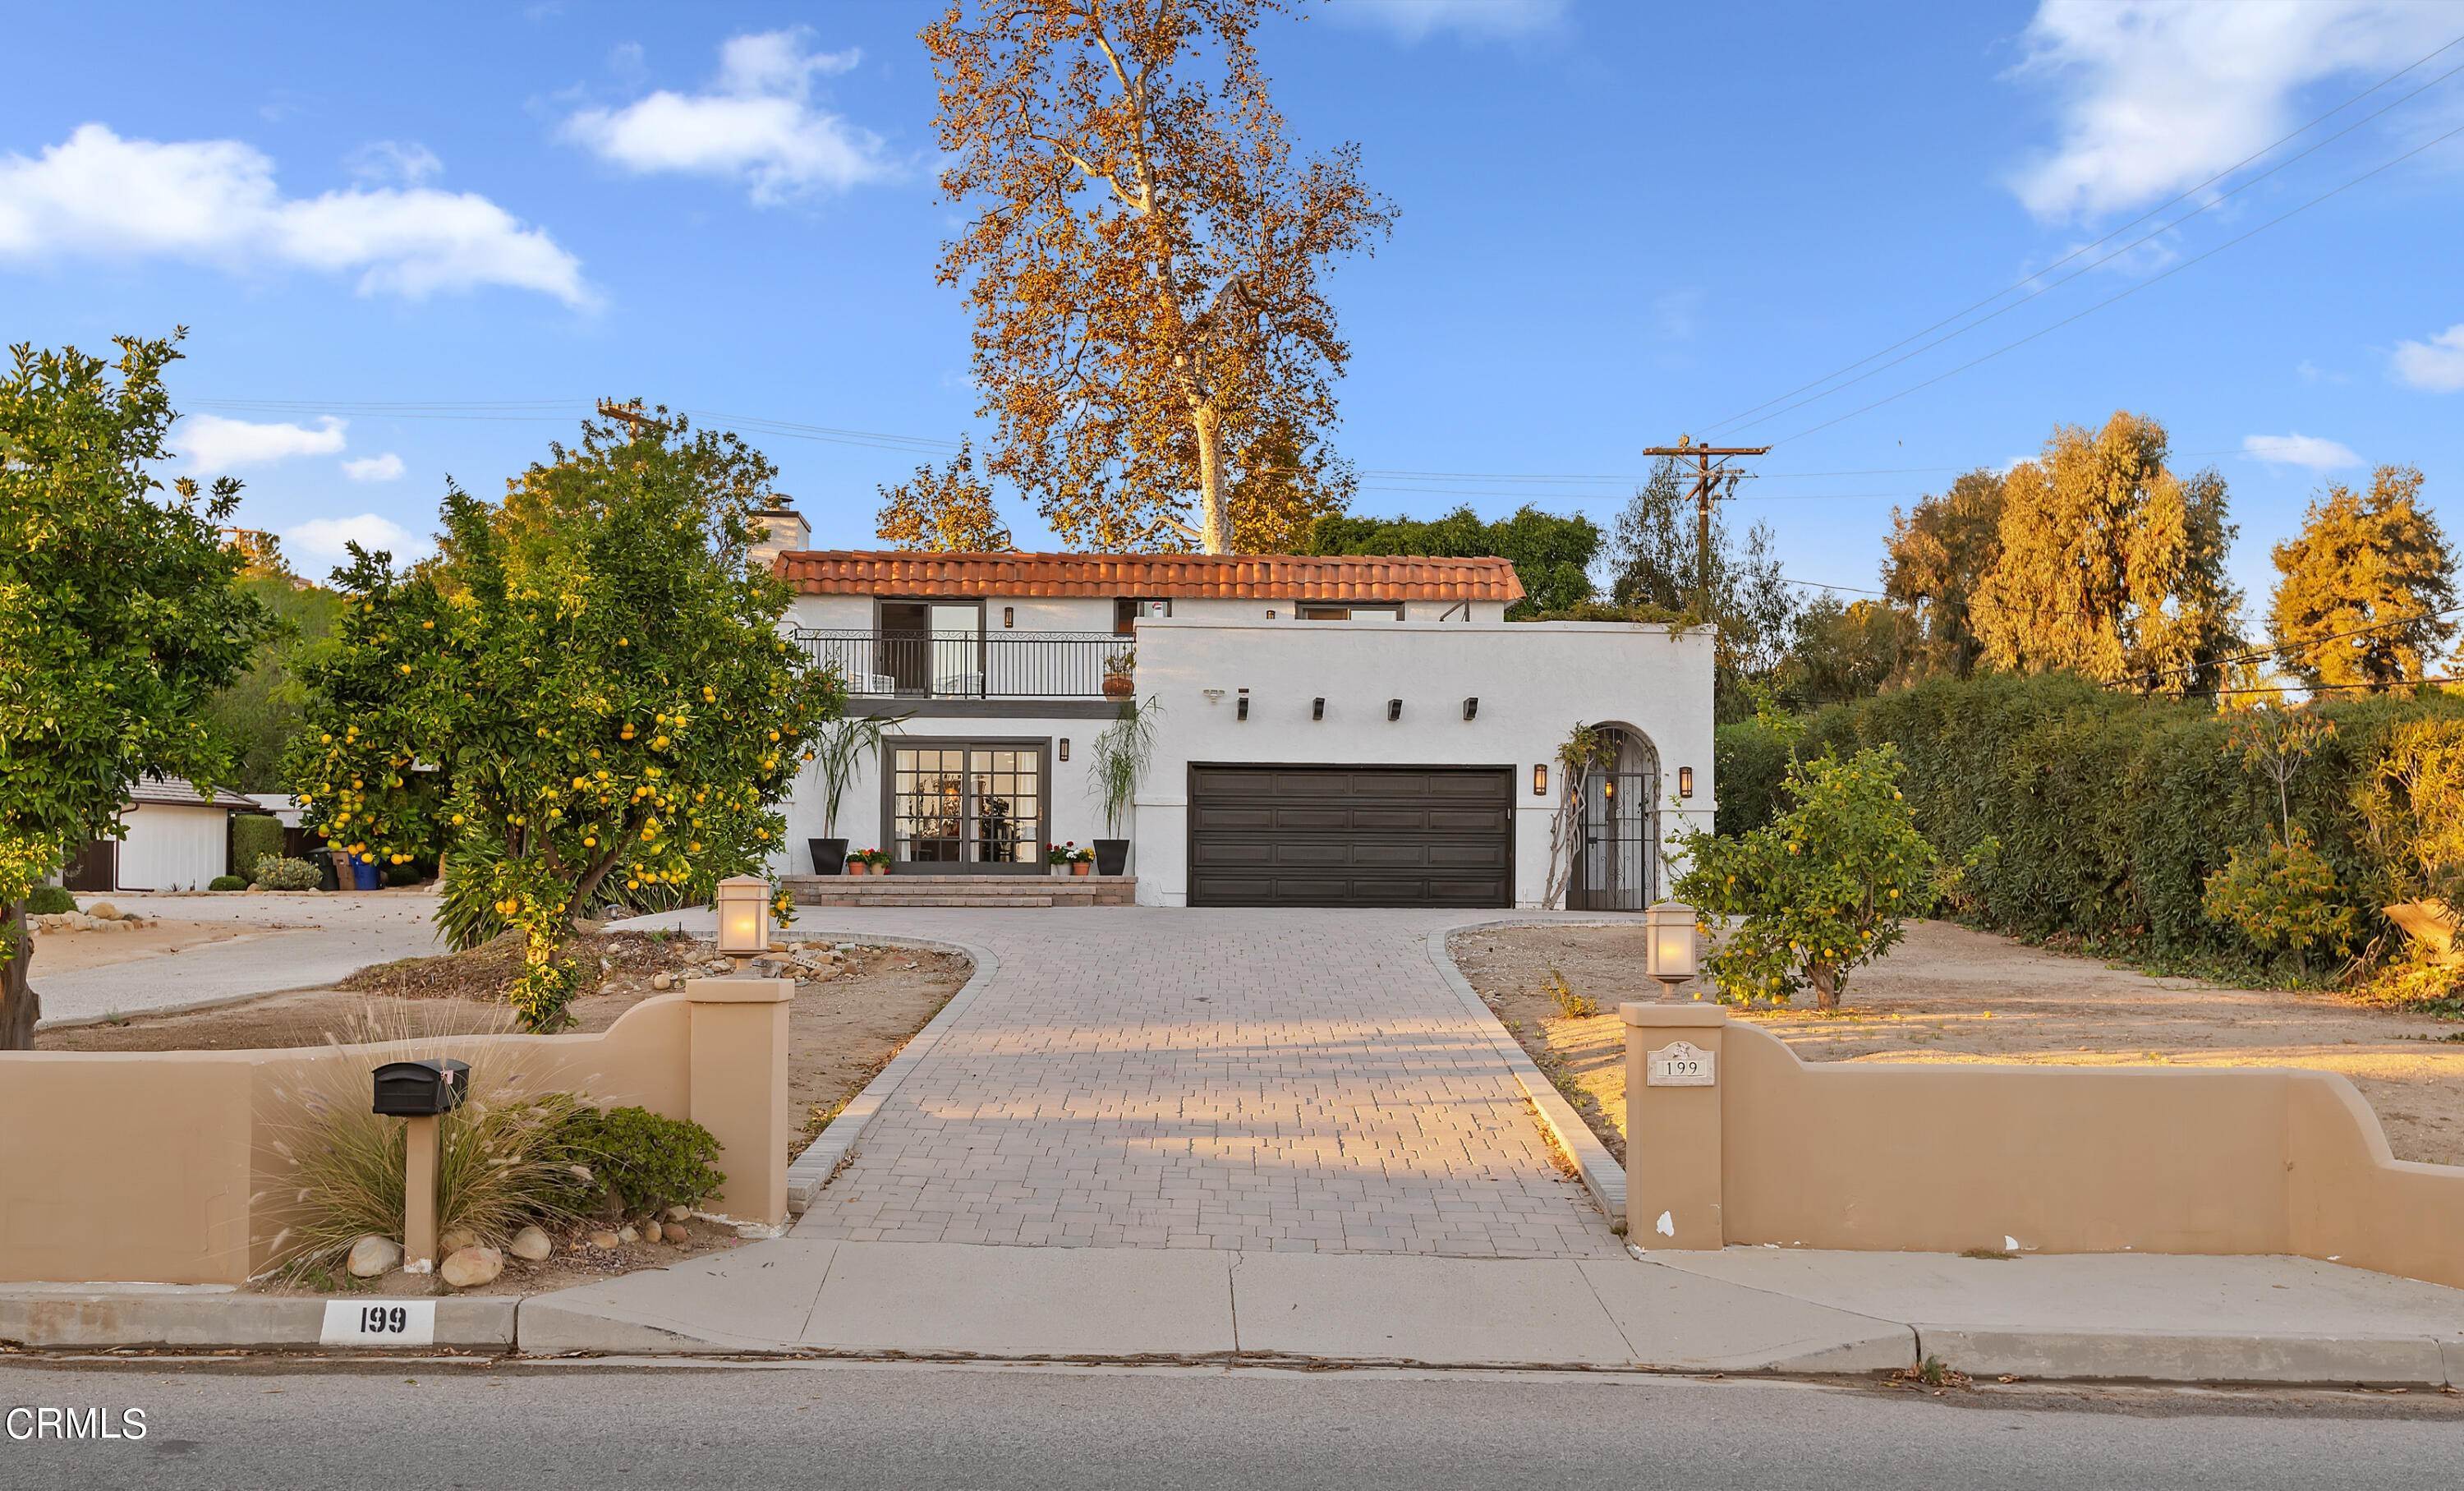 Property en 199 Via Baja Ventura, California 93003 Estados Unidos